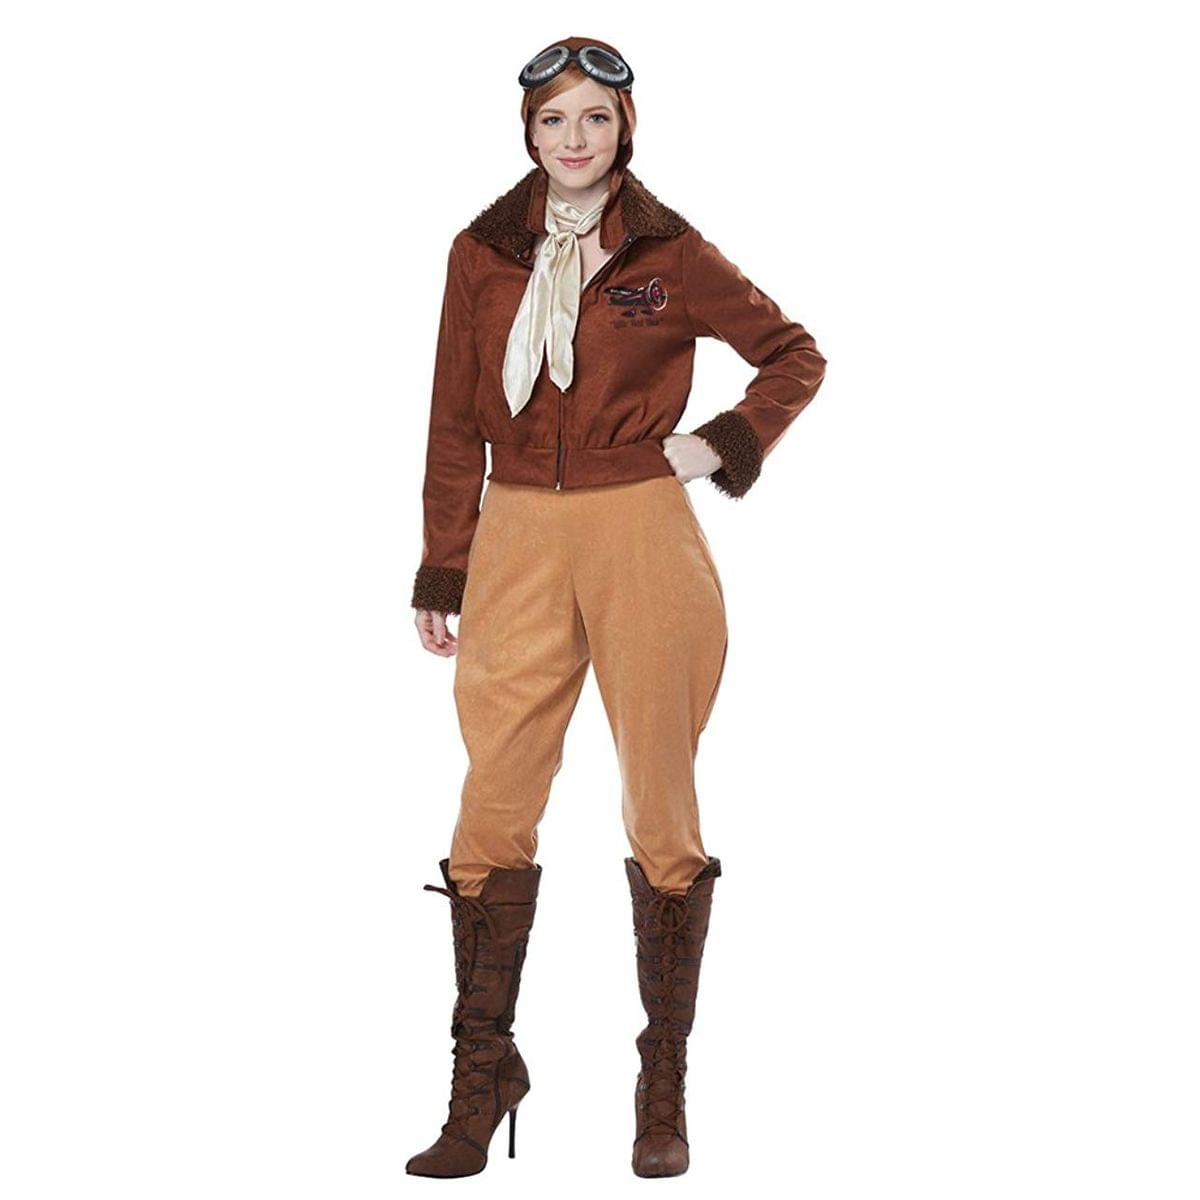 Amelia Earhart/Aviator Women's Costume